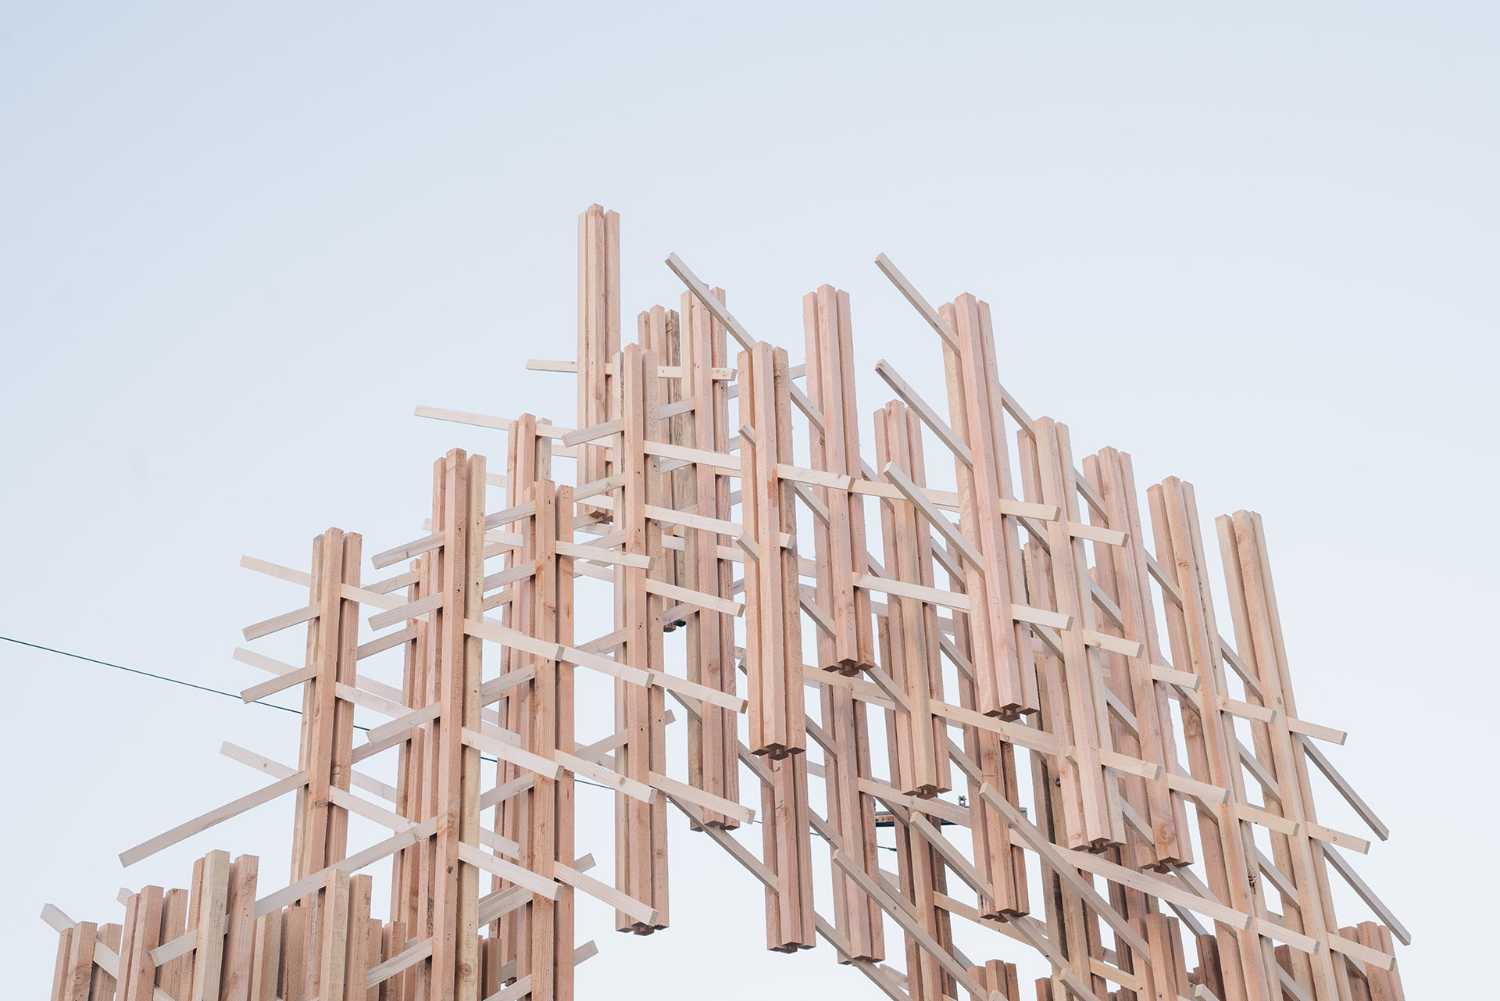 Mori. Une installation en bois à Los Angeles qui conceptualise le sentiment de rassemblement